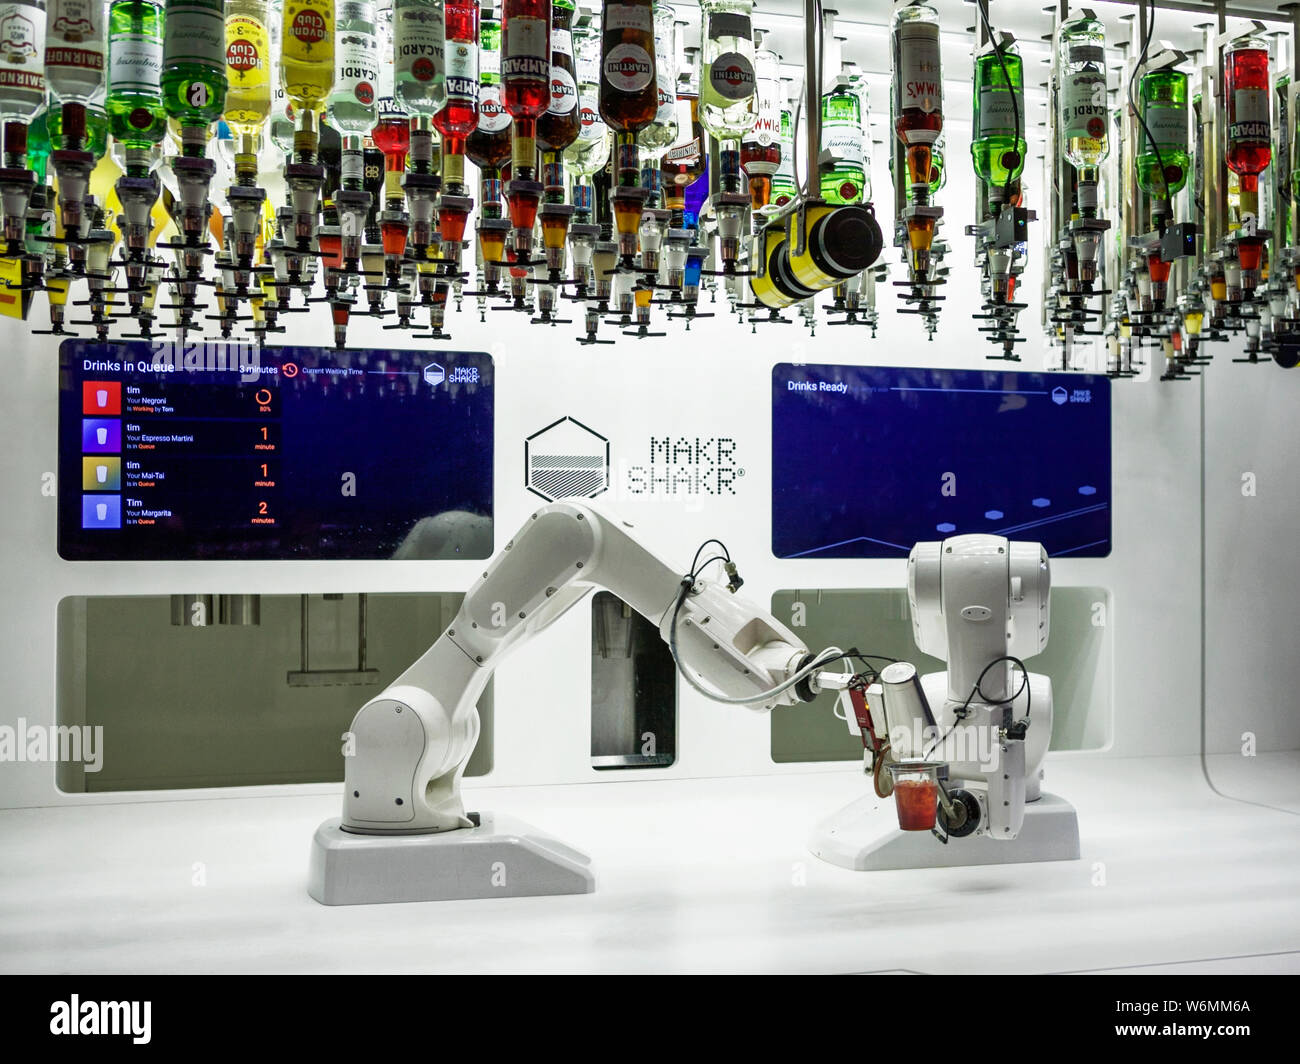 Makr Shakr: 2 Roboterarme machen eine Vielzahl von Cocktails Ausstellung im Barbican London. KI künstliche Intelligenz. Stockfoto